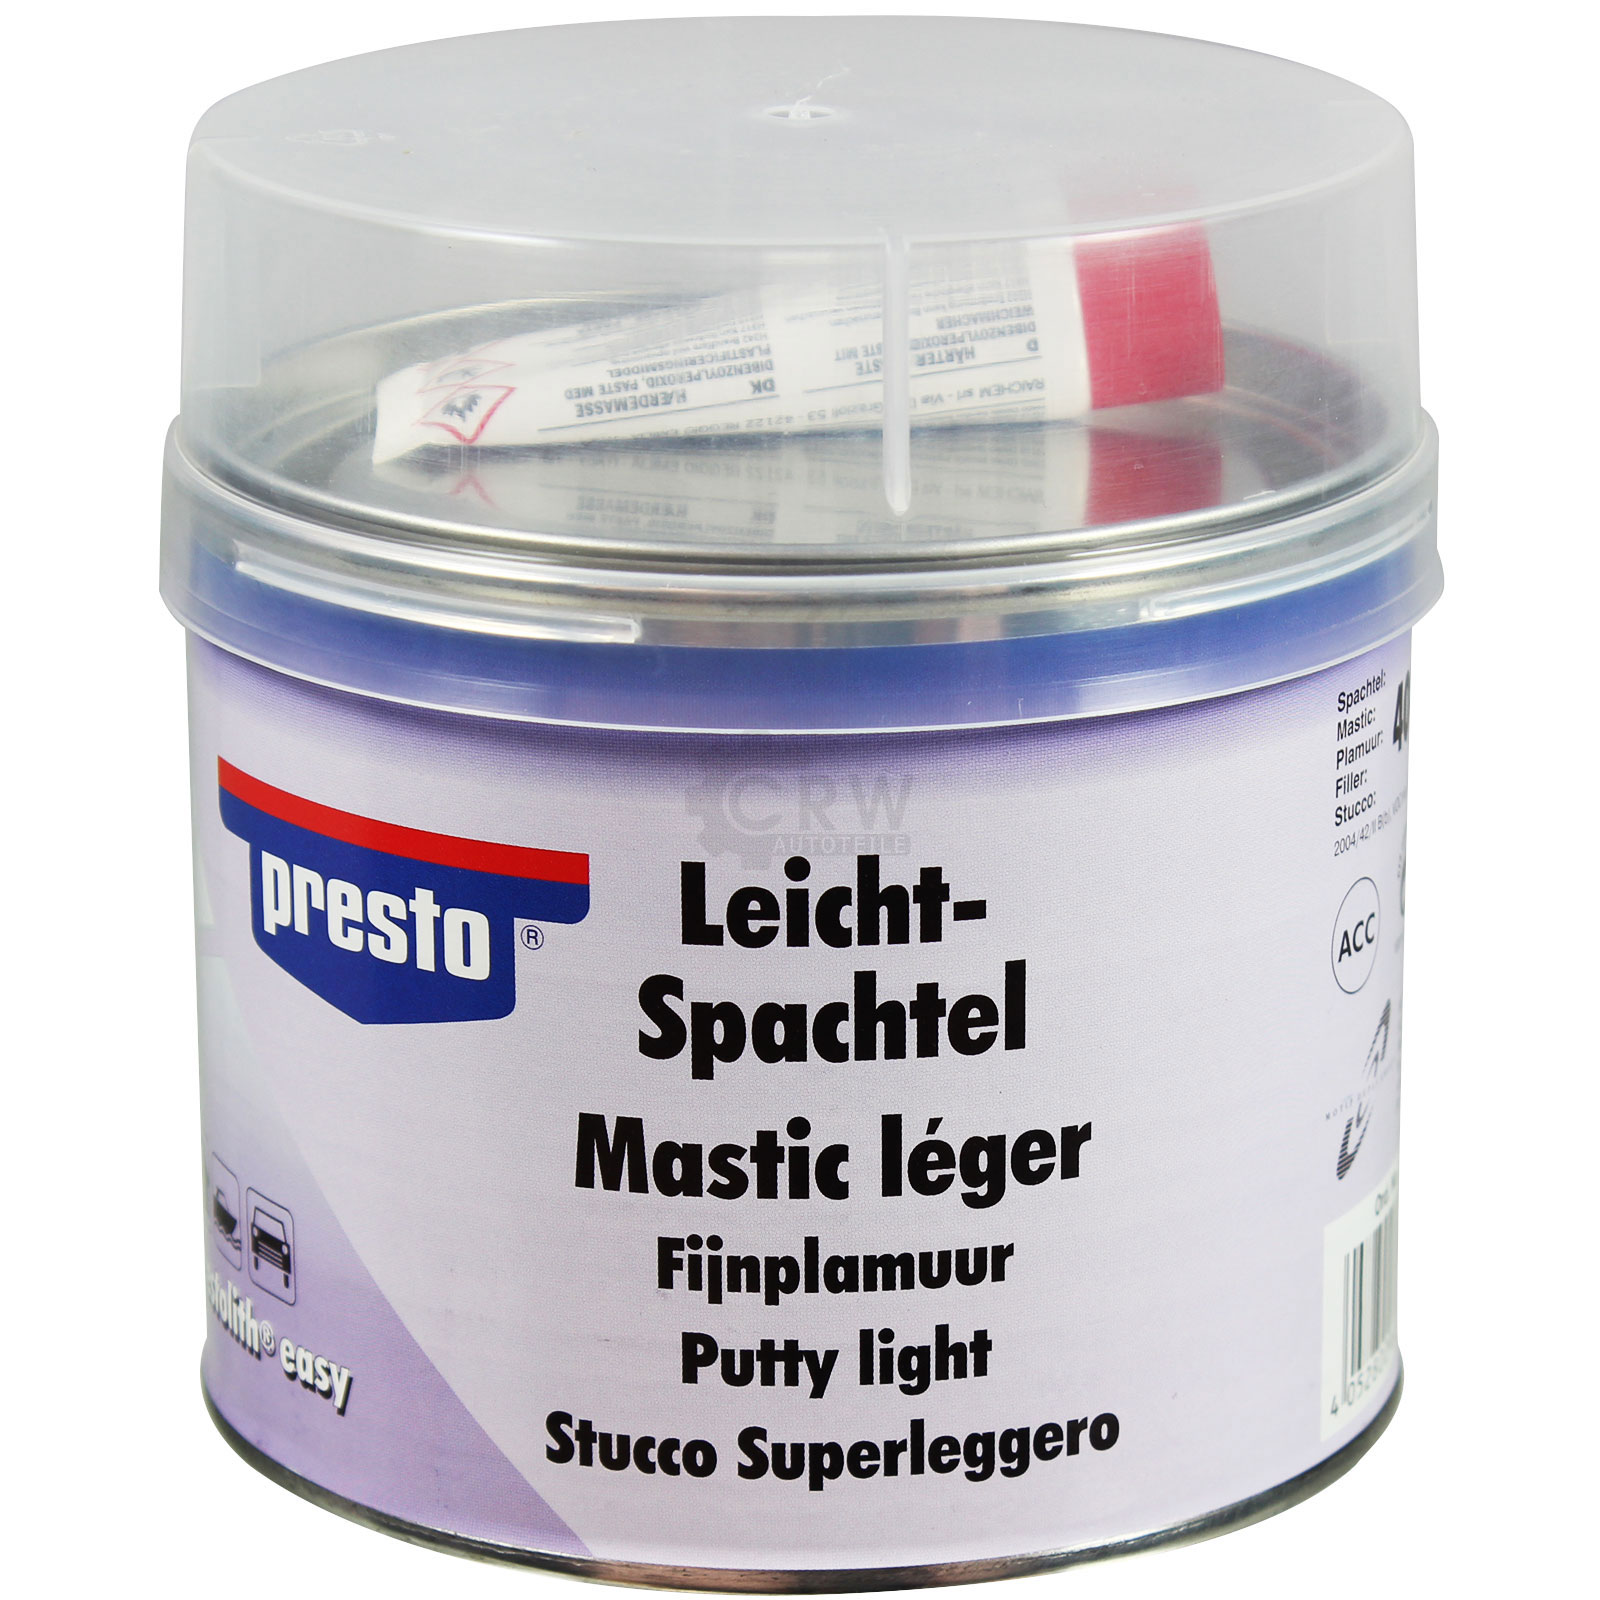 Presto Leicht-Spachtel Leichtspachtel 500g Spachtelkit inkl Härter